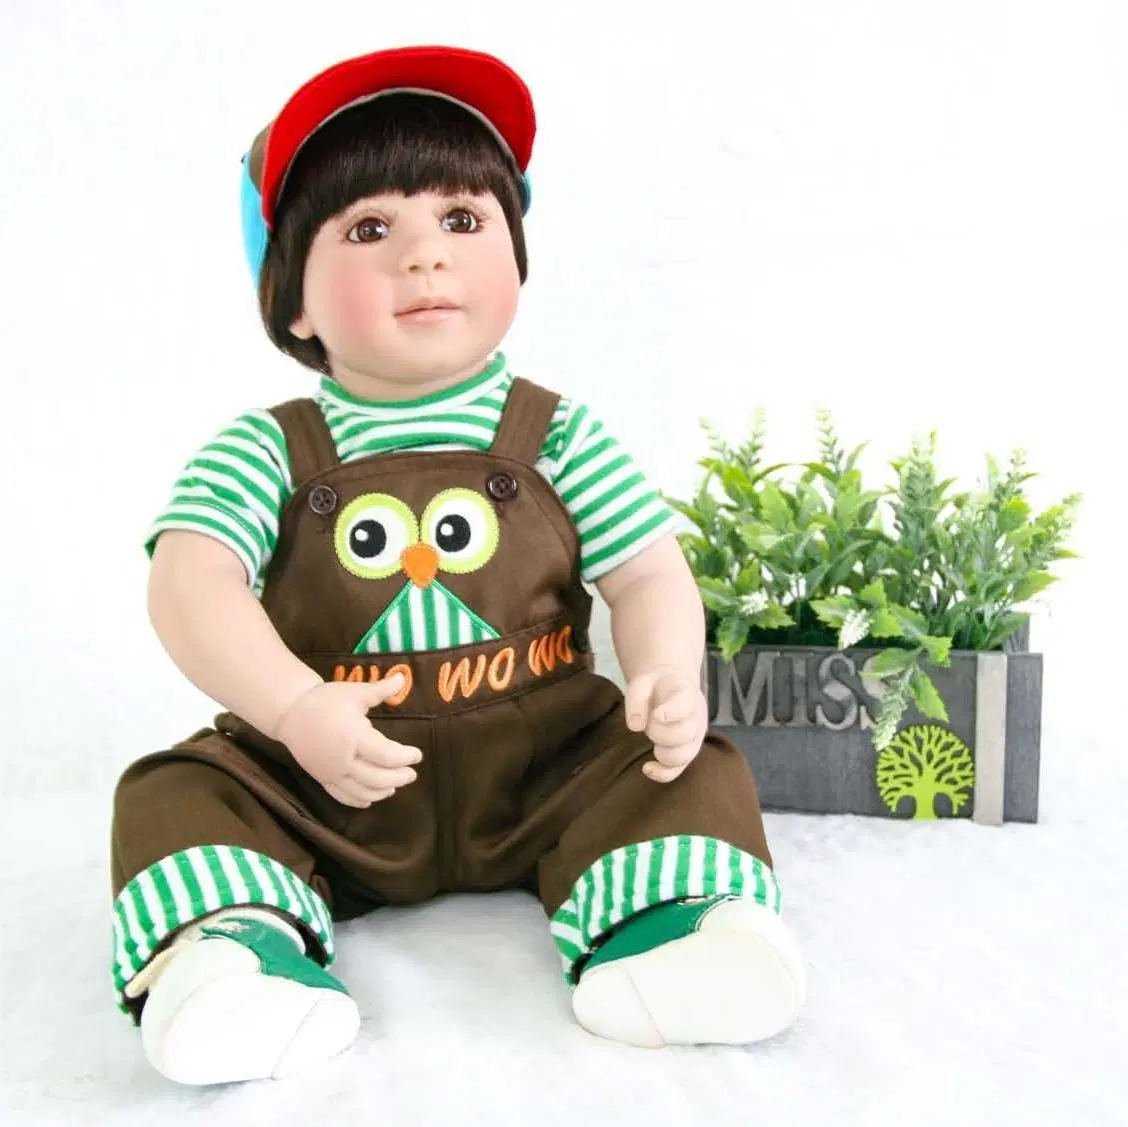 Fábrica OEM personalizar renace Muñecas muñecas bebé recién nacido muñeca silicona realista hermosas muñecas muñecas de silicona fabricante en China